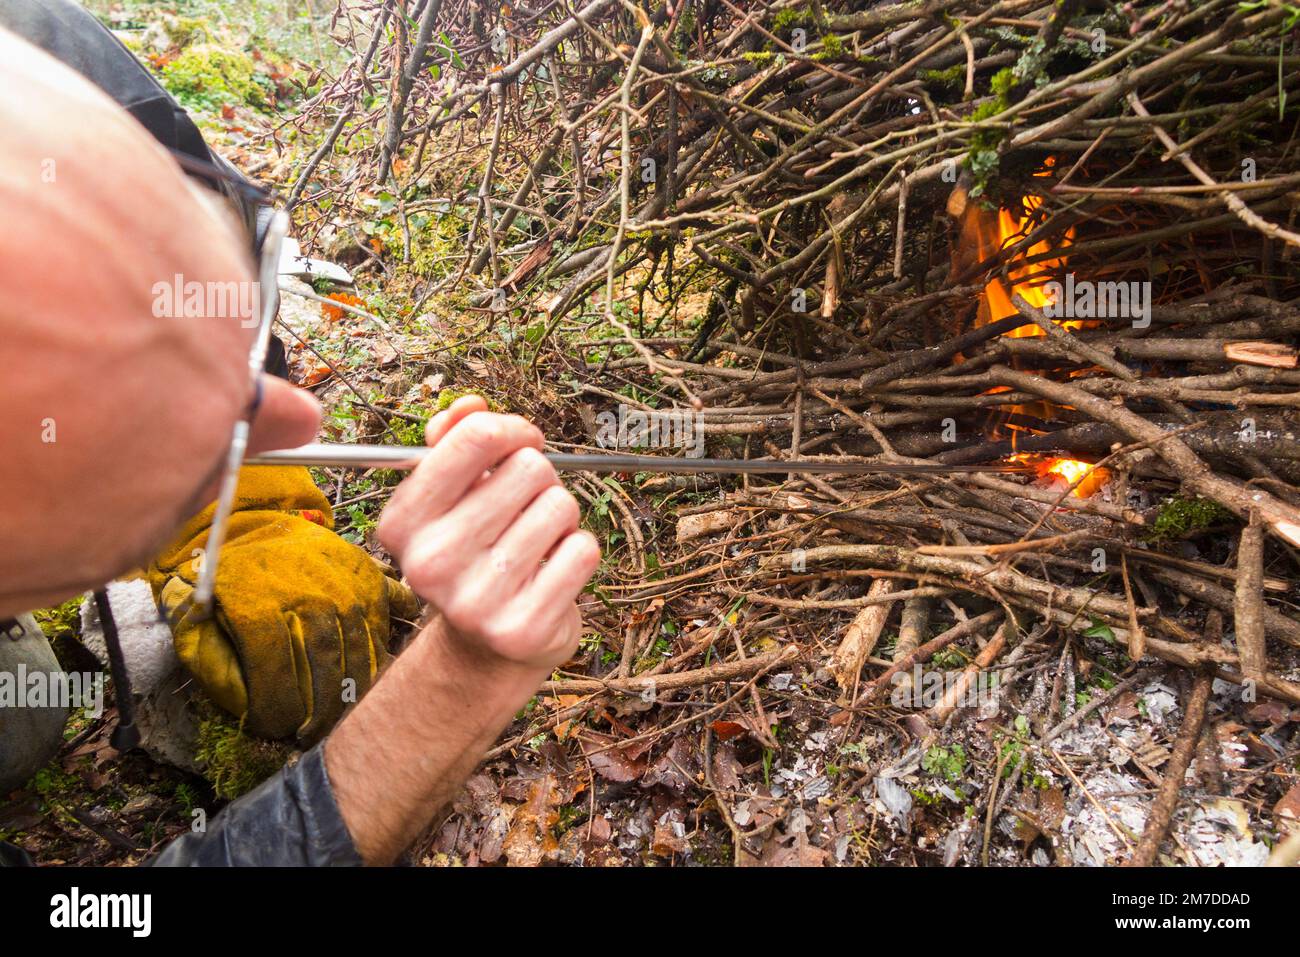 Fördern Sie das Feuer, indem Sie (Sauerstoff) ein sich ausdehnendes Metallrohr hinunterblasen, um die Flamme in einem häuslichen Lagerfeuer zu brennen, Blätter und Zweige zu verbrennen, die in einem häuslichen Garten auf dem Land angezündet werden. (133) Stockfoto